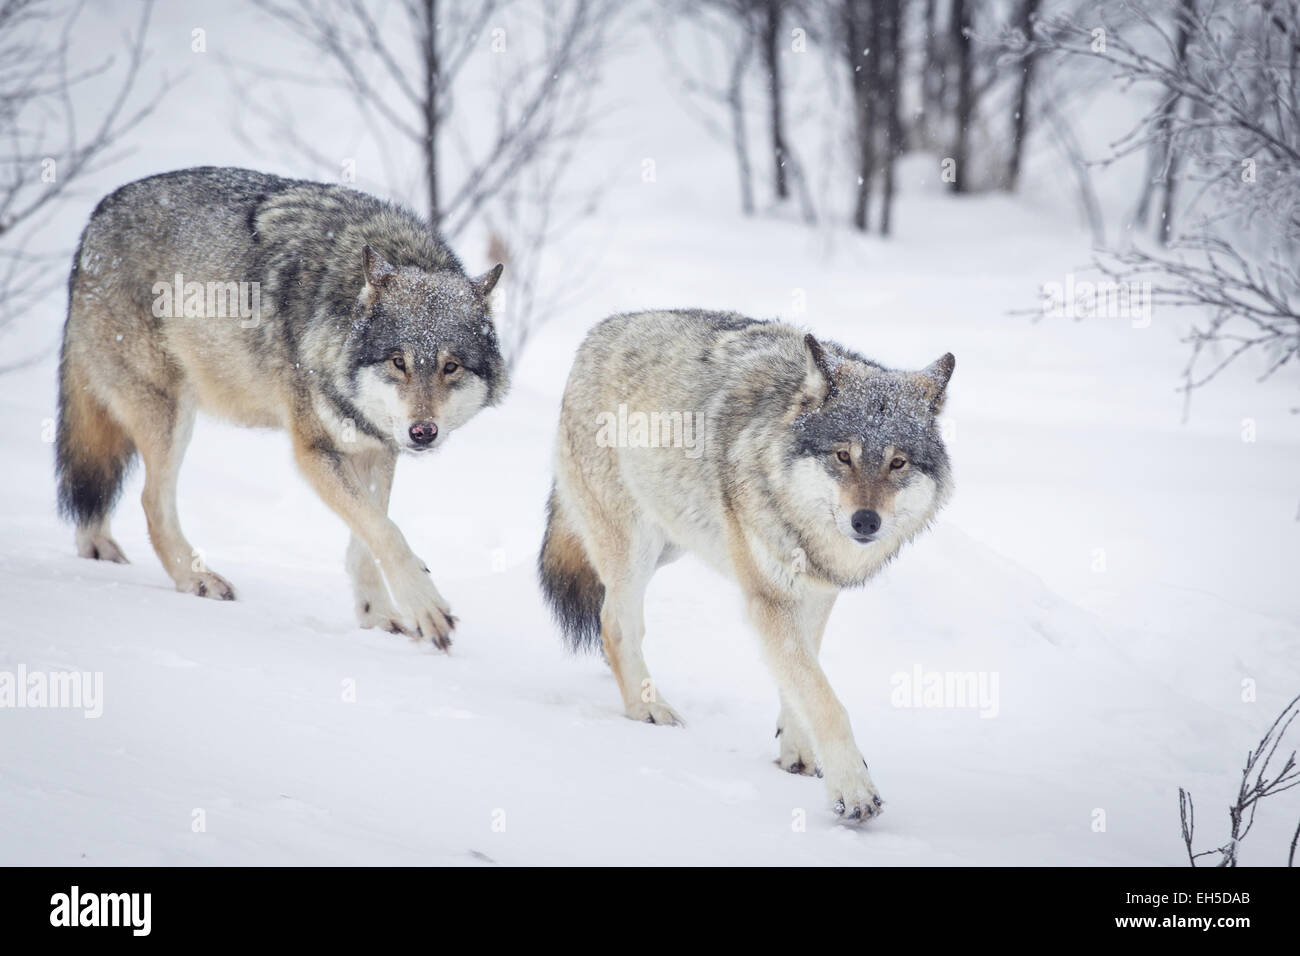 Loup dans une forêt d'hiver norvégien. Qu'il neige. Banque D'Images